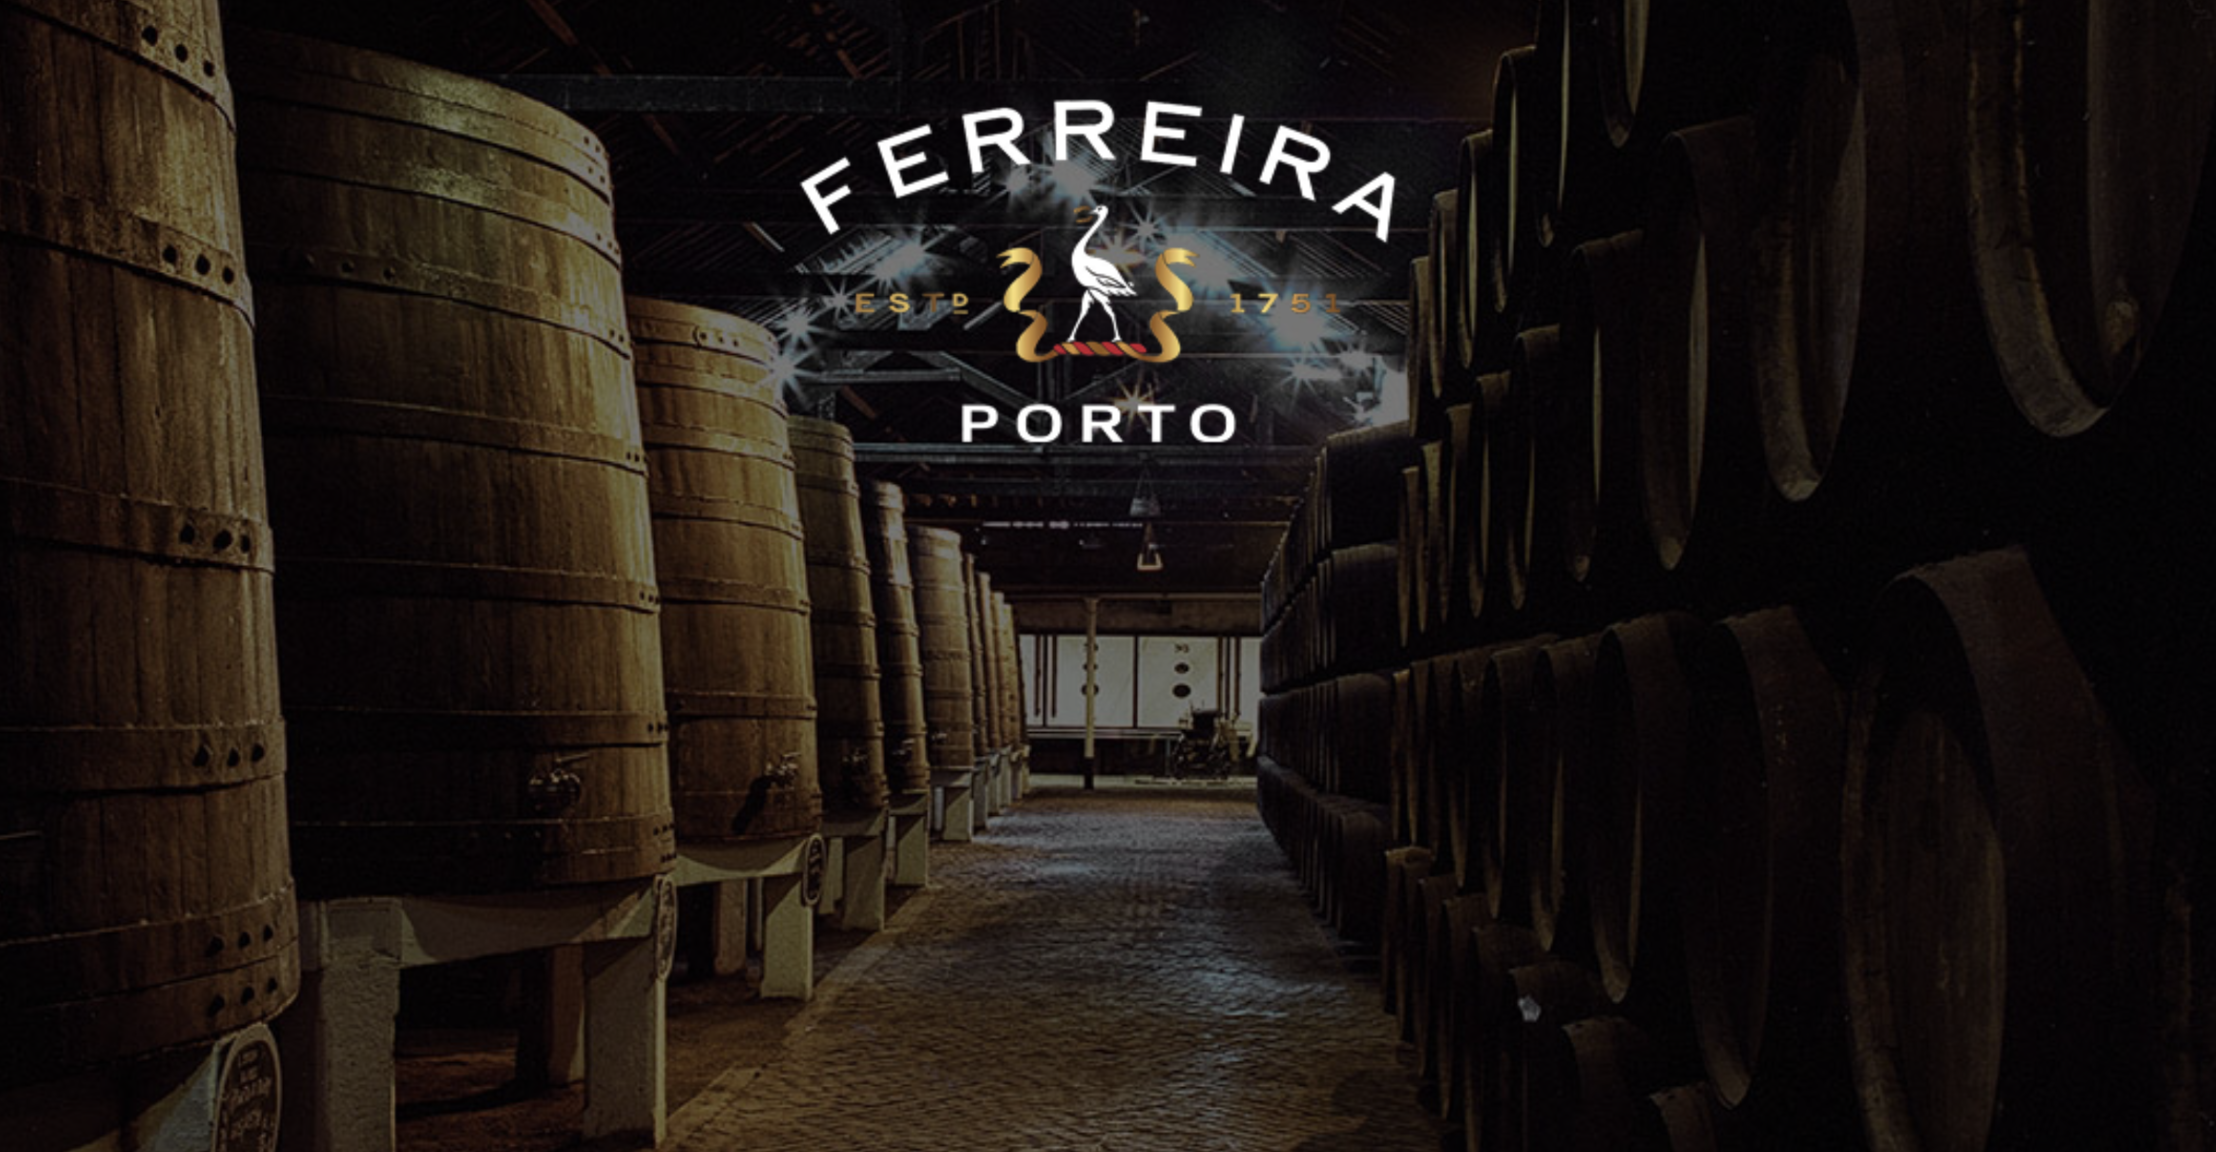 Porto Oporto Piwnice z Winem Porto Winiarnie Winnice Vila Nova de Gaia Polski Przewodnik Aktualne Ceny Zwiedzanie Degustacja 2021 wino Portugalia